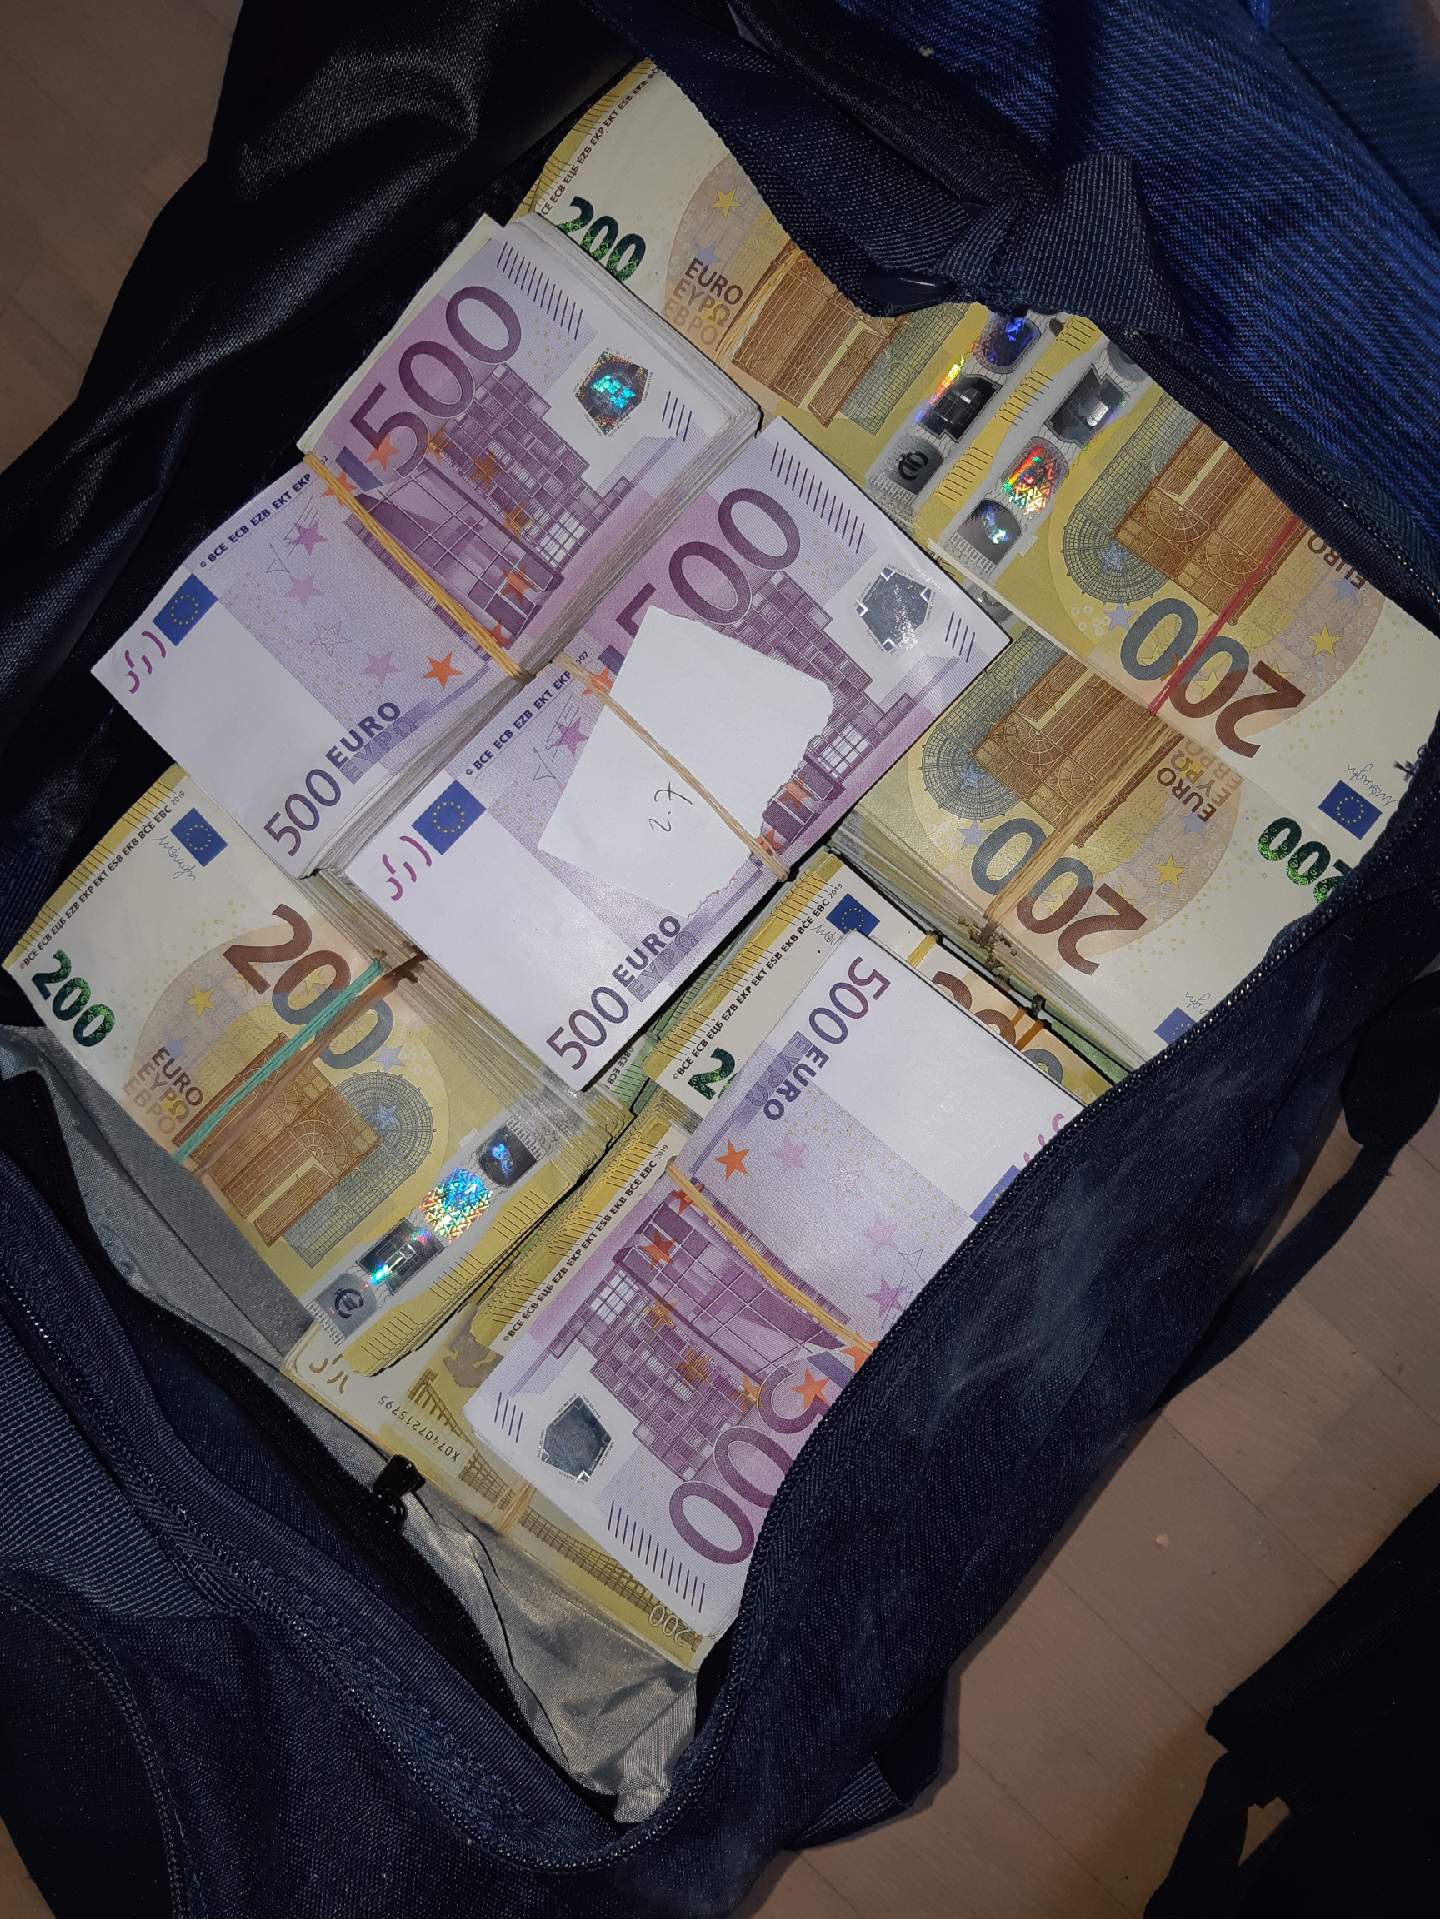 Tien familieleden opgepakt voor witwassen tientallen miljoenen euro's drugsgeld